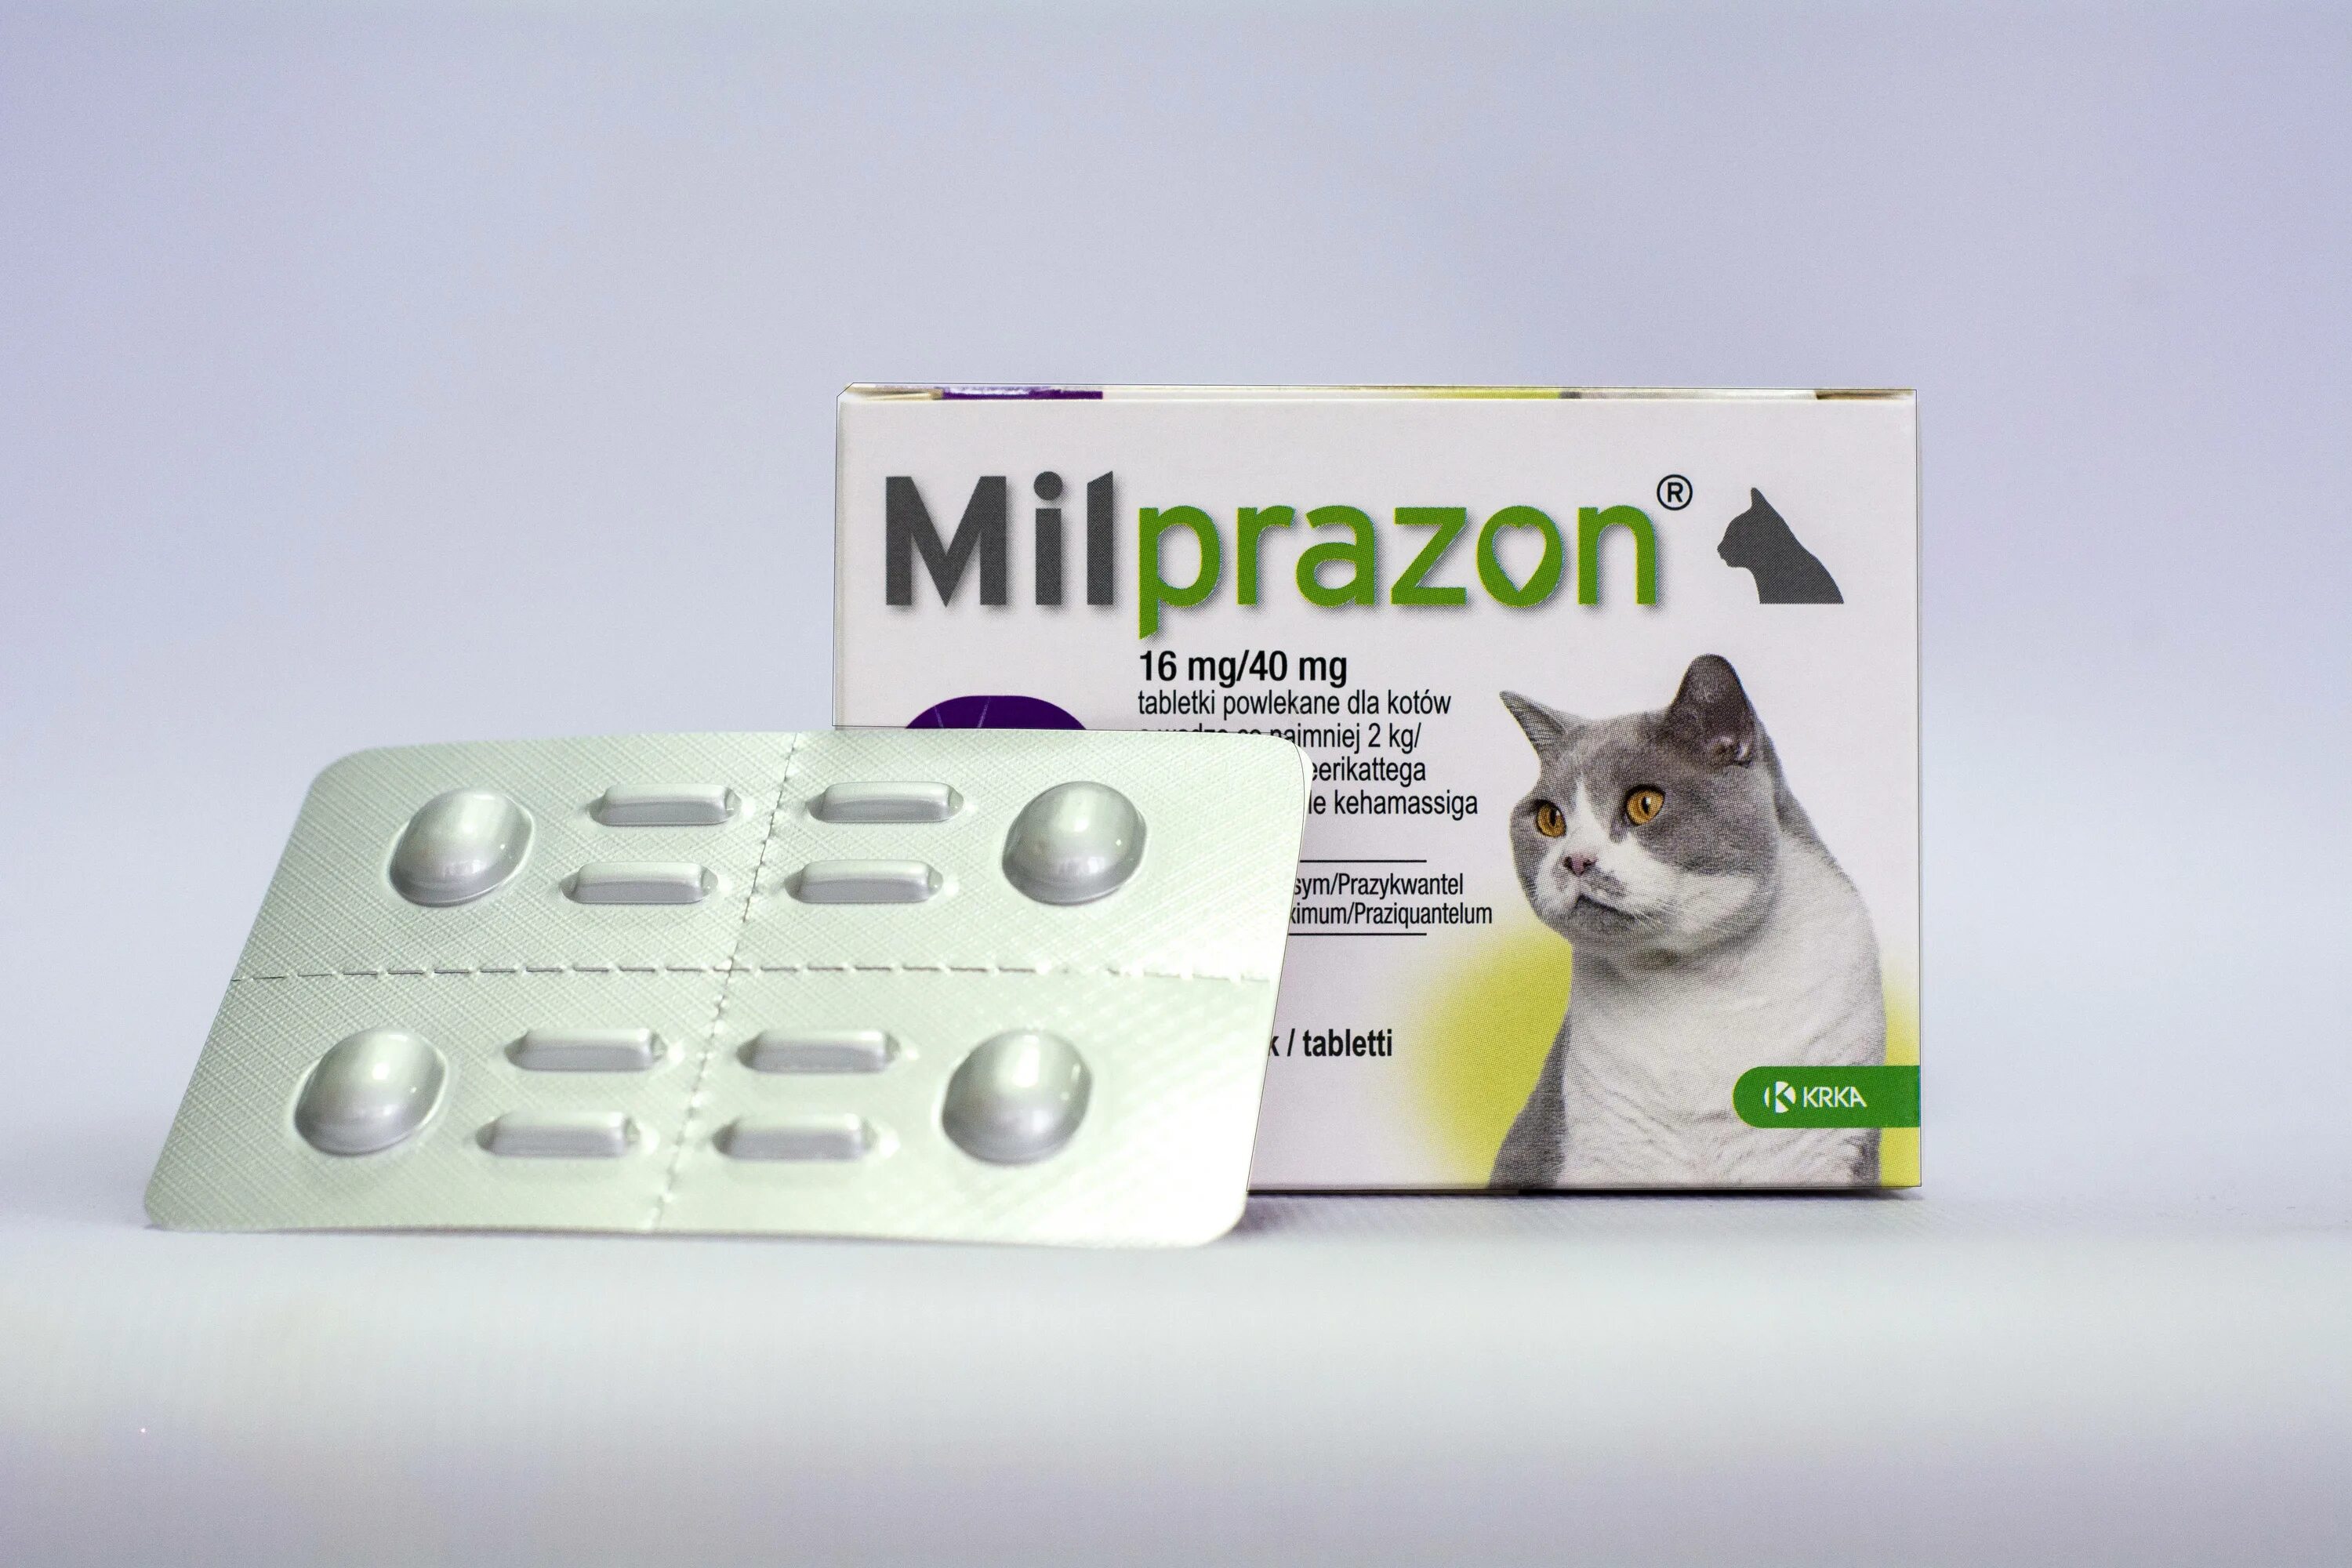 Глистогонное для кошек купить. Милпразон для кошек таблетки 2*16мг/40мг (МШ). От глистов Милпразон. Милпразон для кошек от 2 кг 16 / 40 мг (упаковка 2 таблетки). Милпразон для котов и кошек до 2 кг 4 / 10 мг (упаковка 2 таблетки).